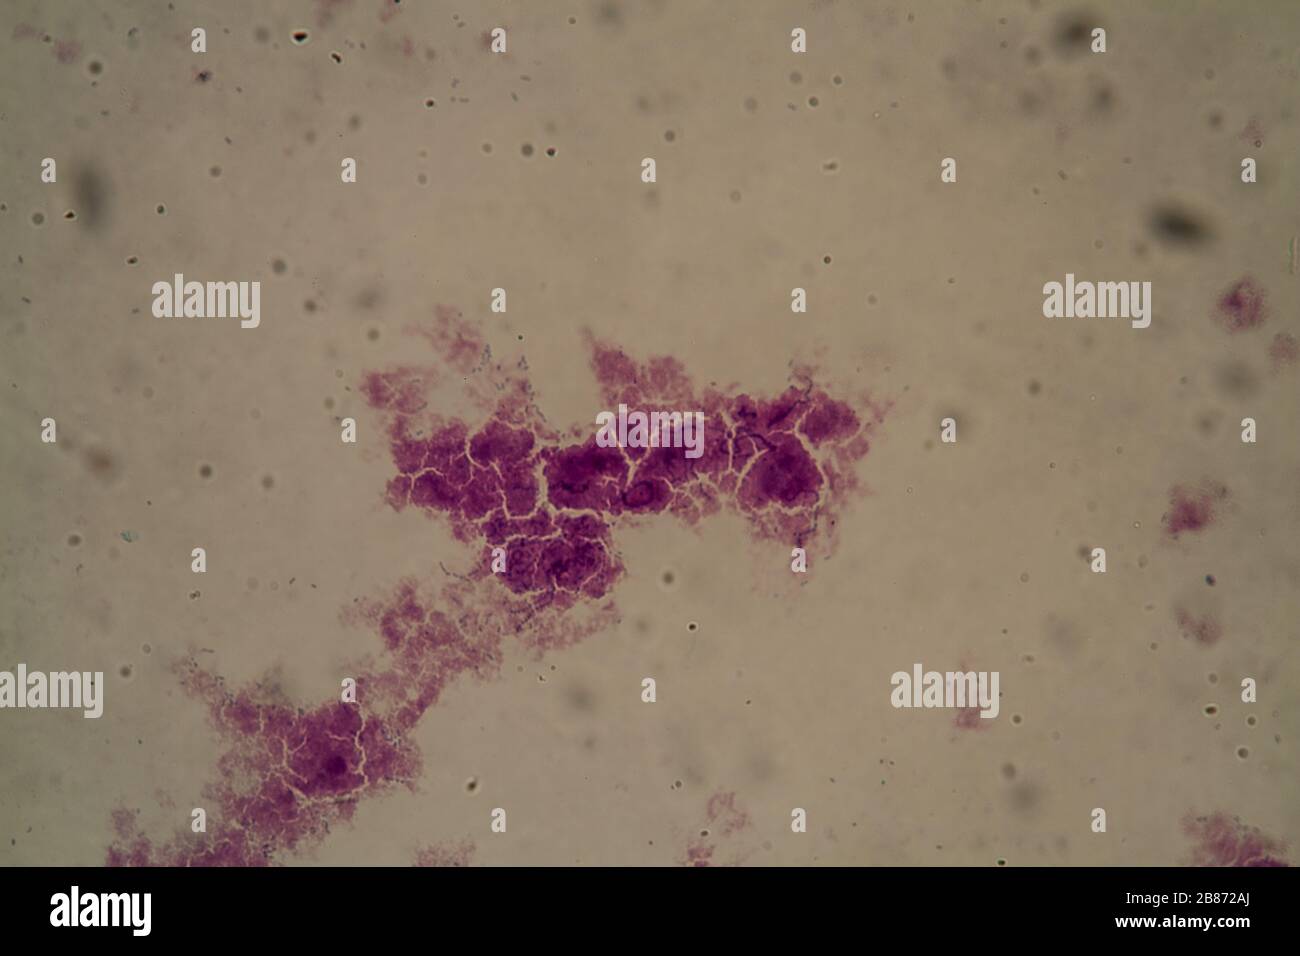 Lactis streptococcus Cultivating Streptococcus